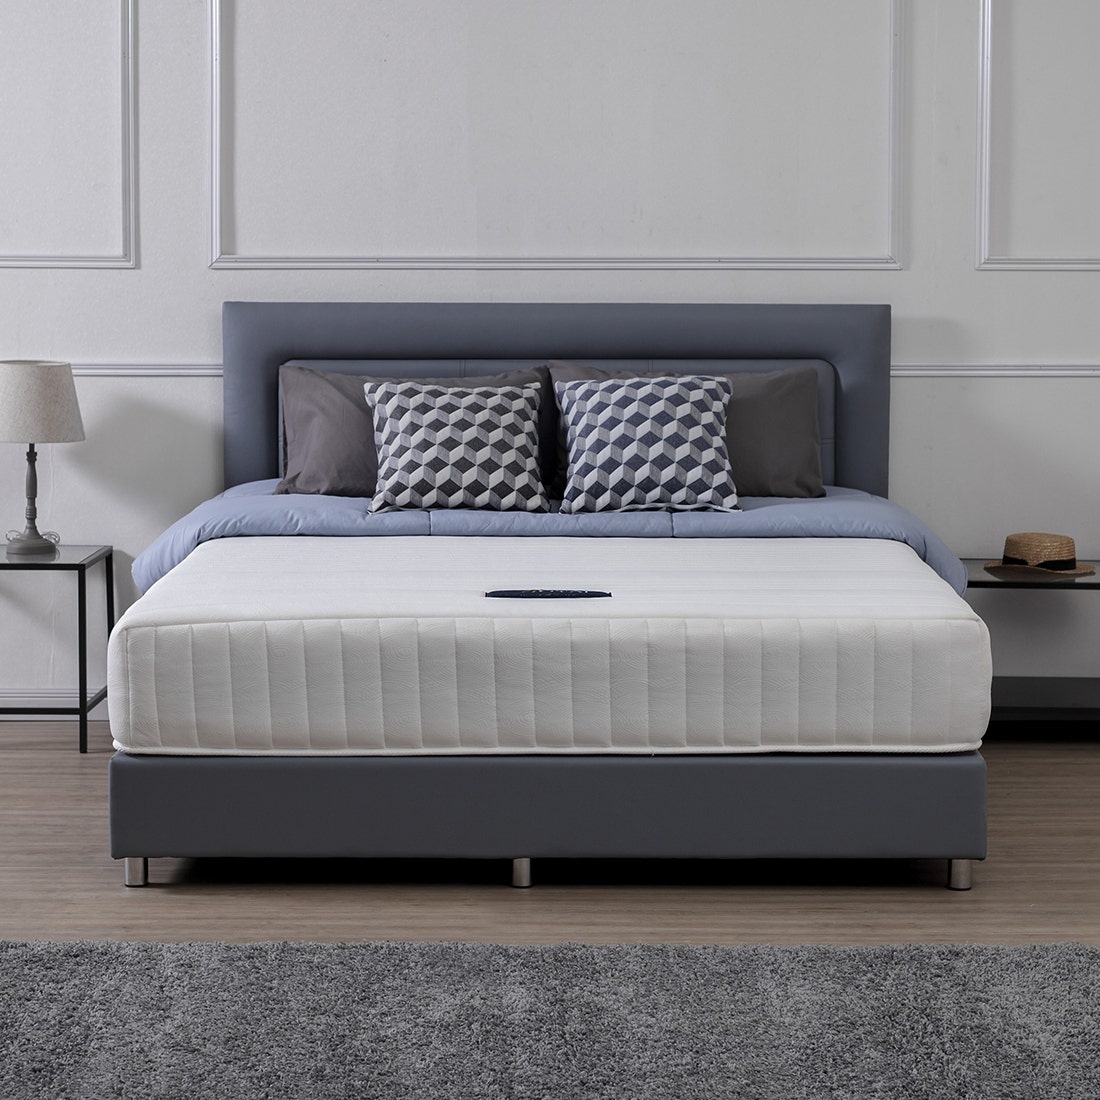 39001292-mattress-bedding-mattresses-spring-mattresses-31